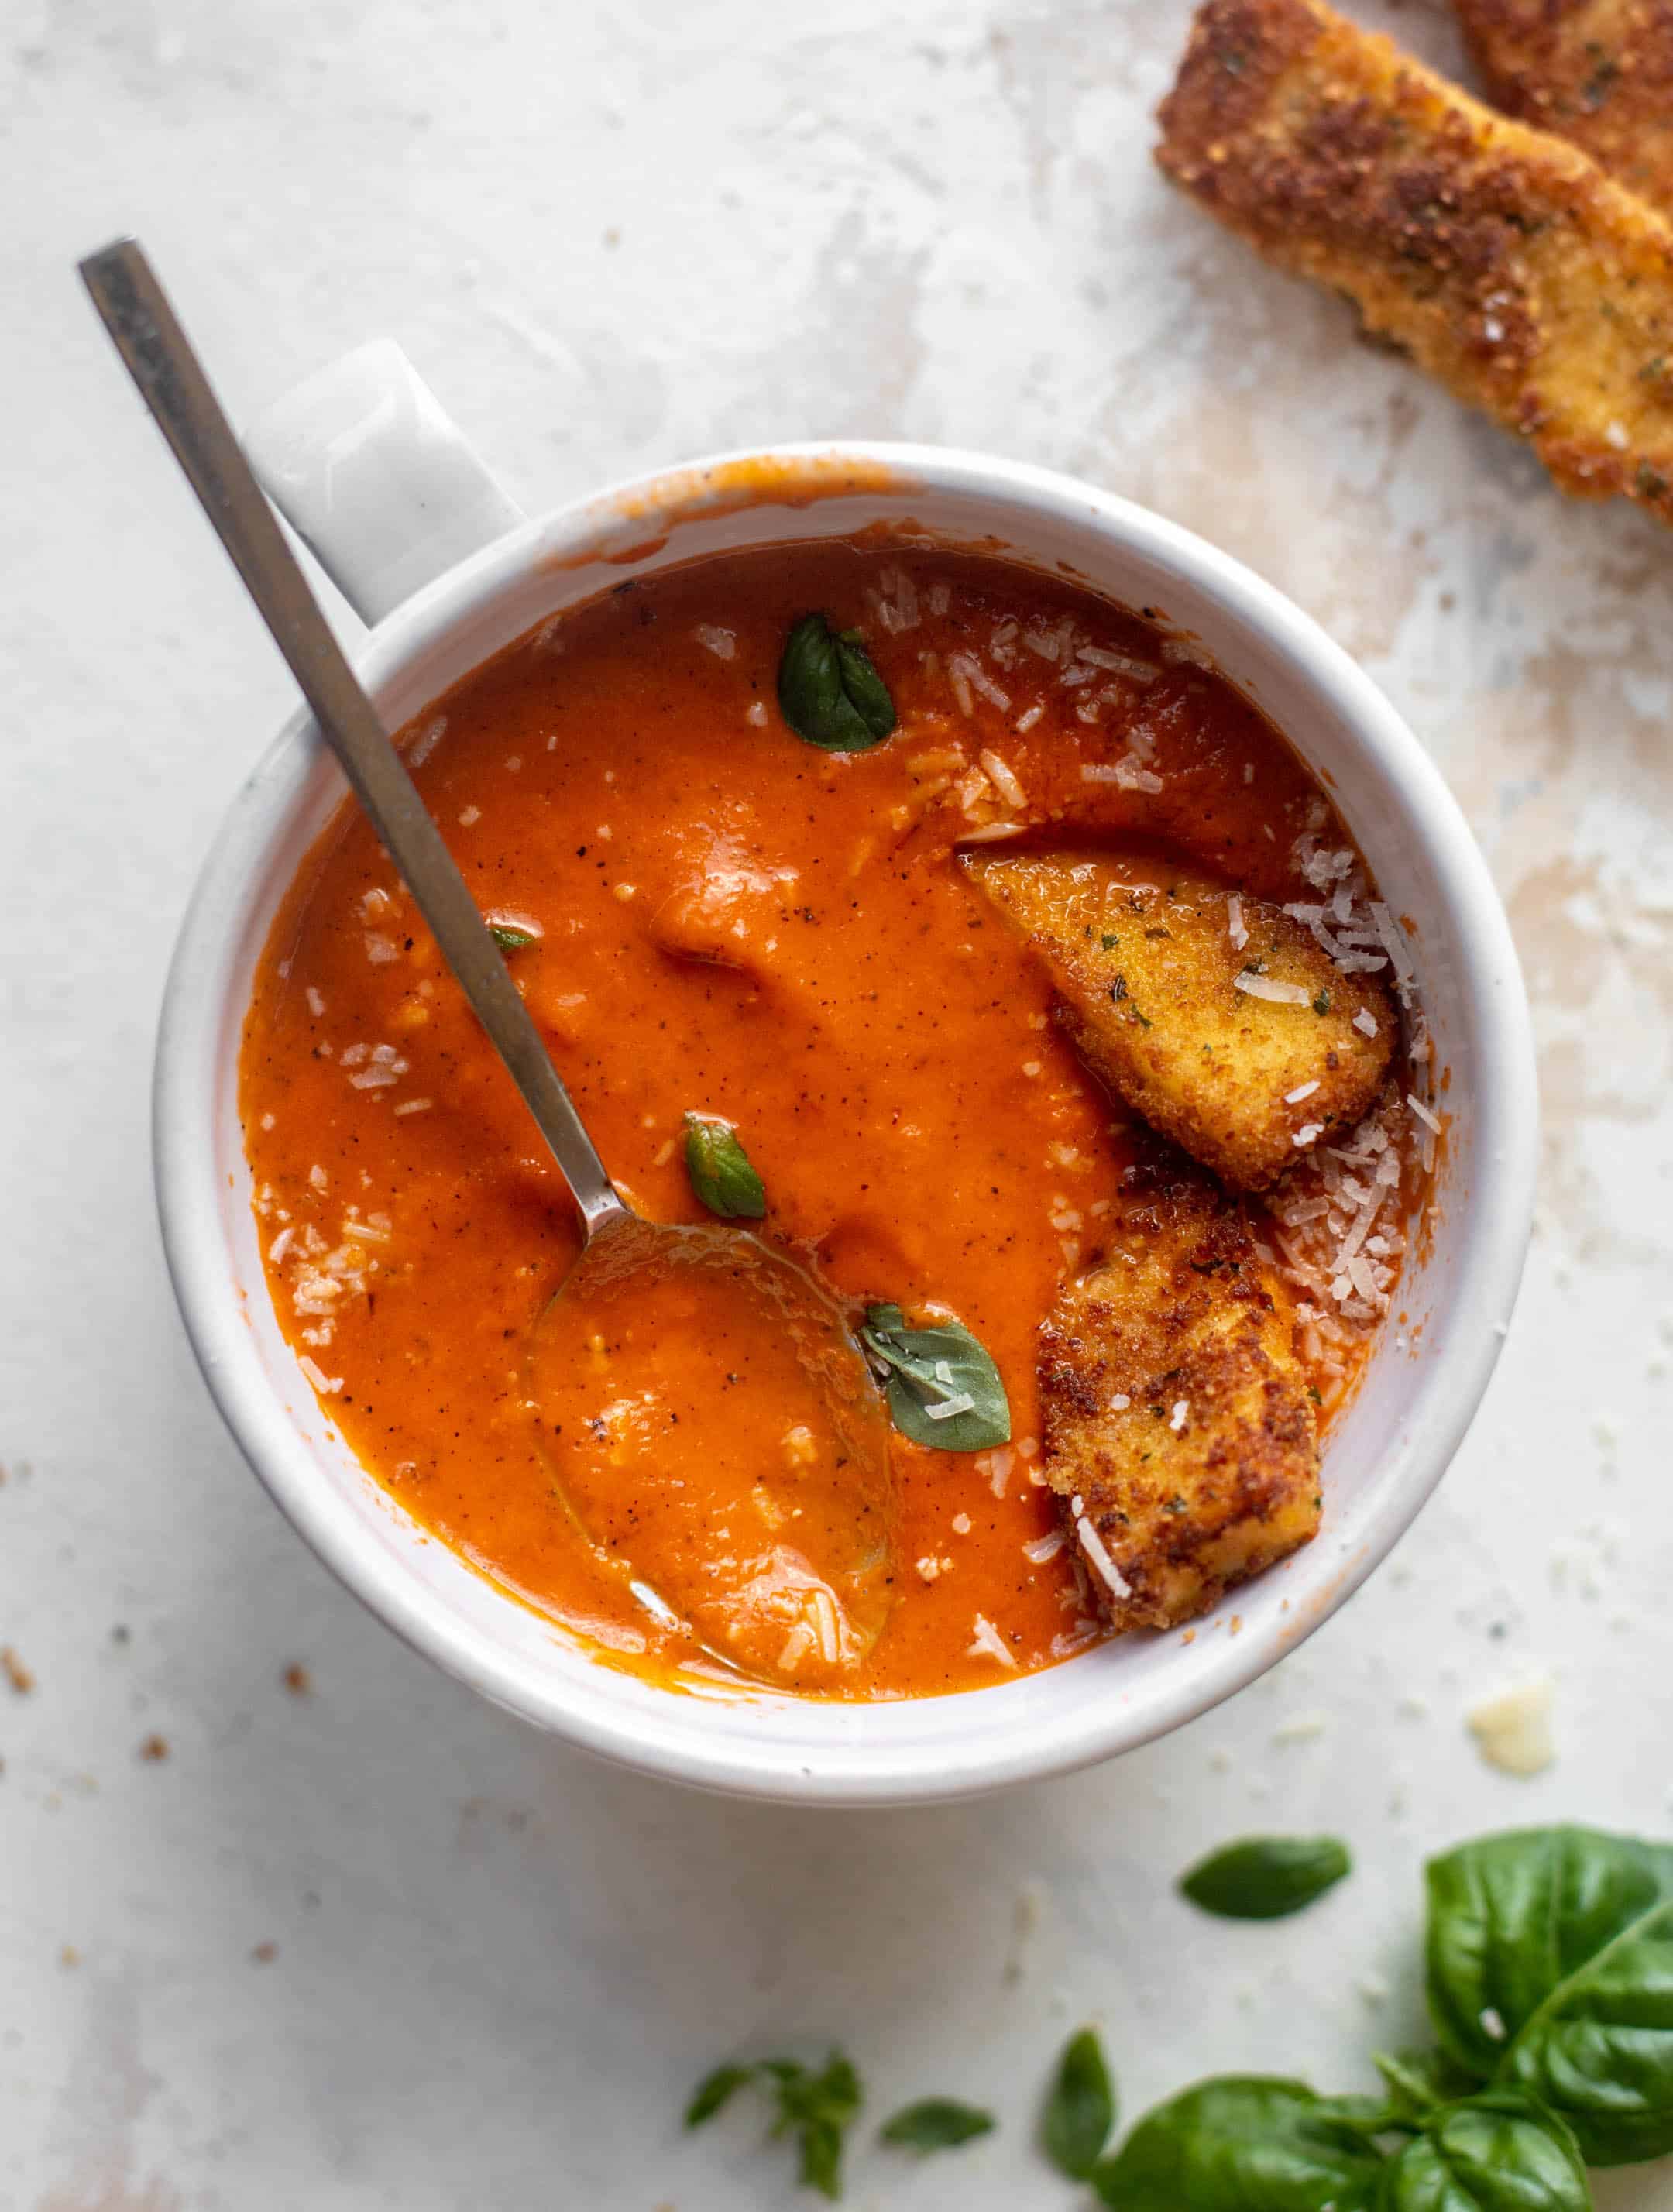 tomato soup with halloumi cheese sticks